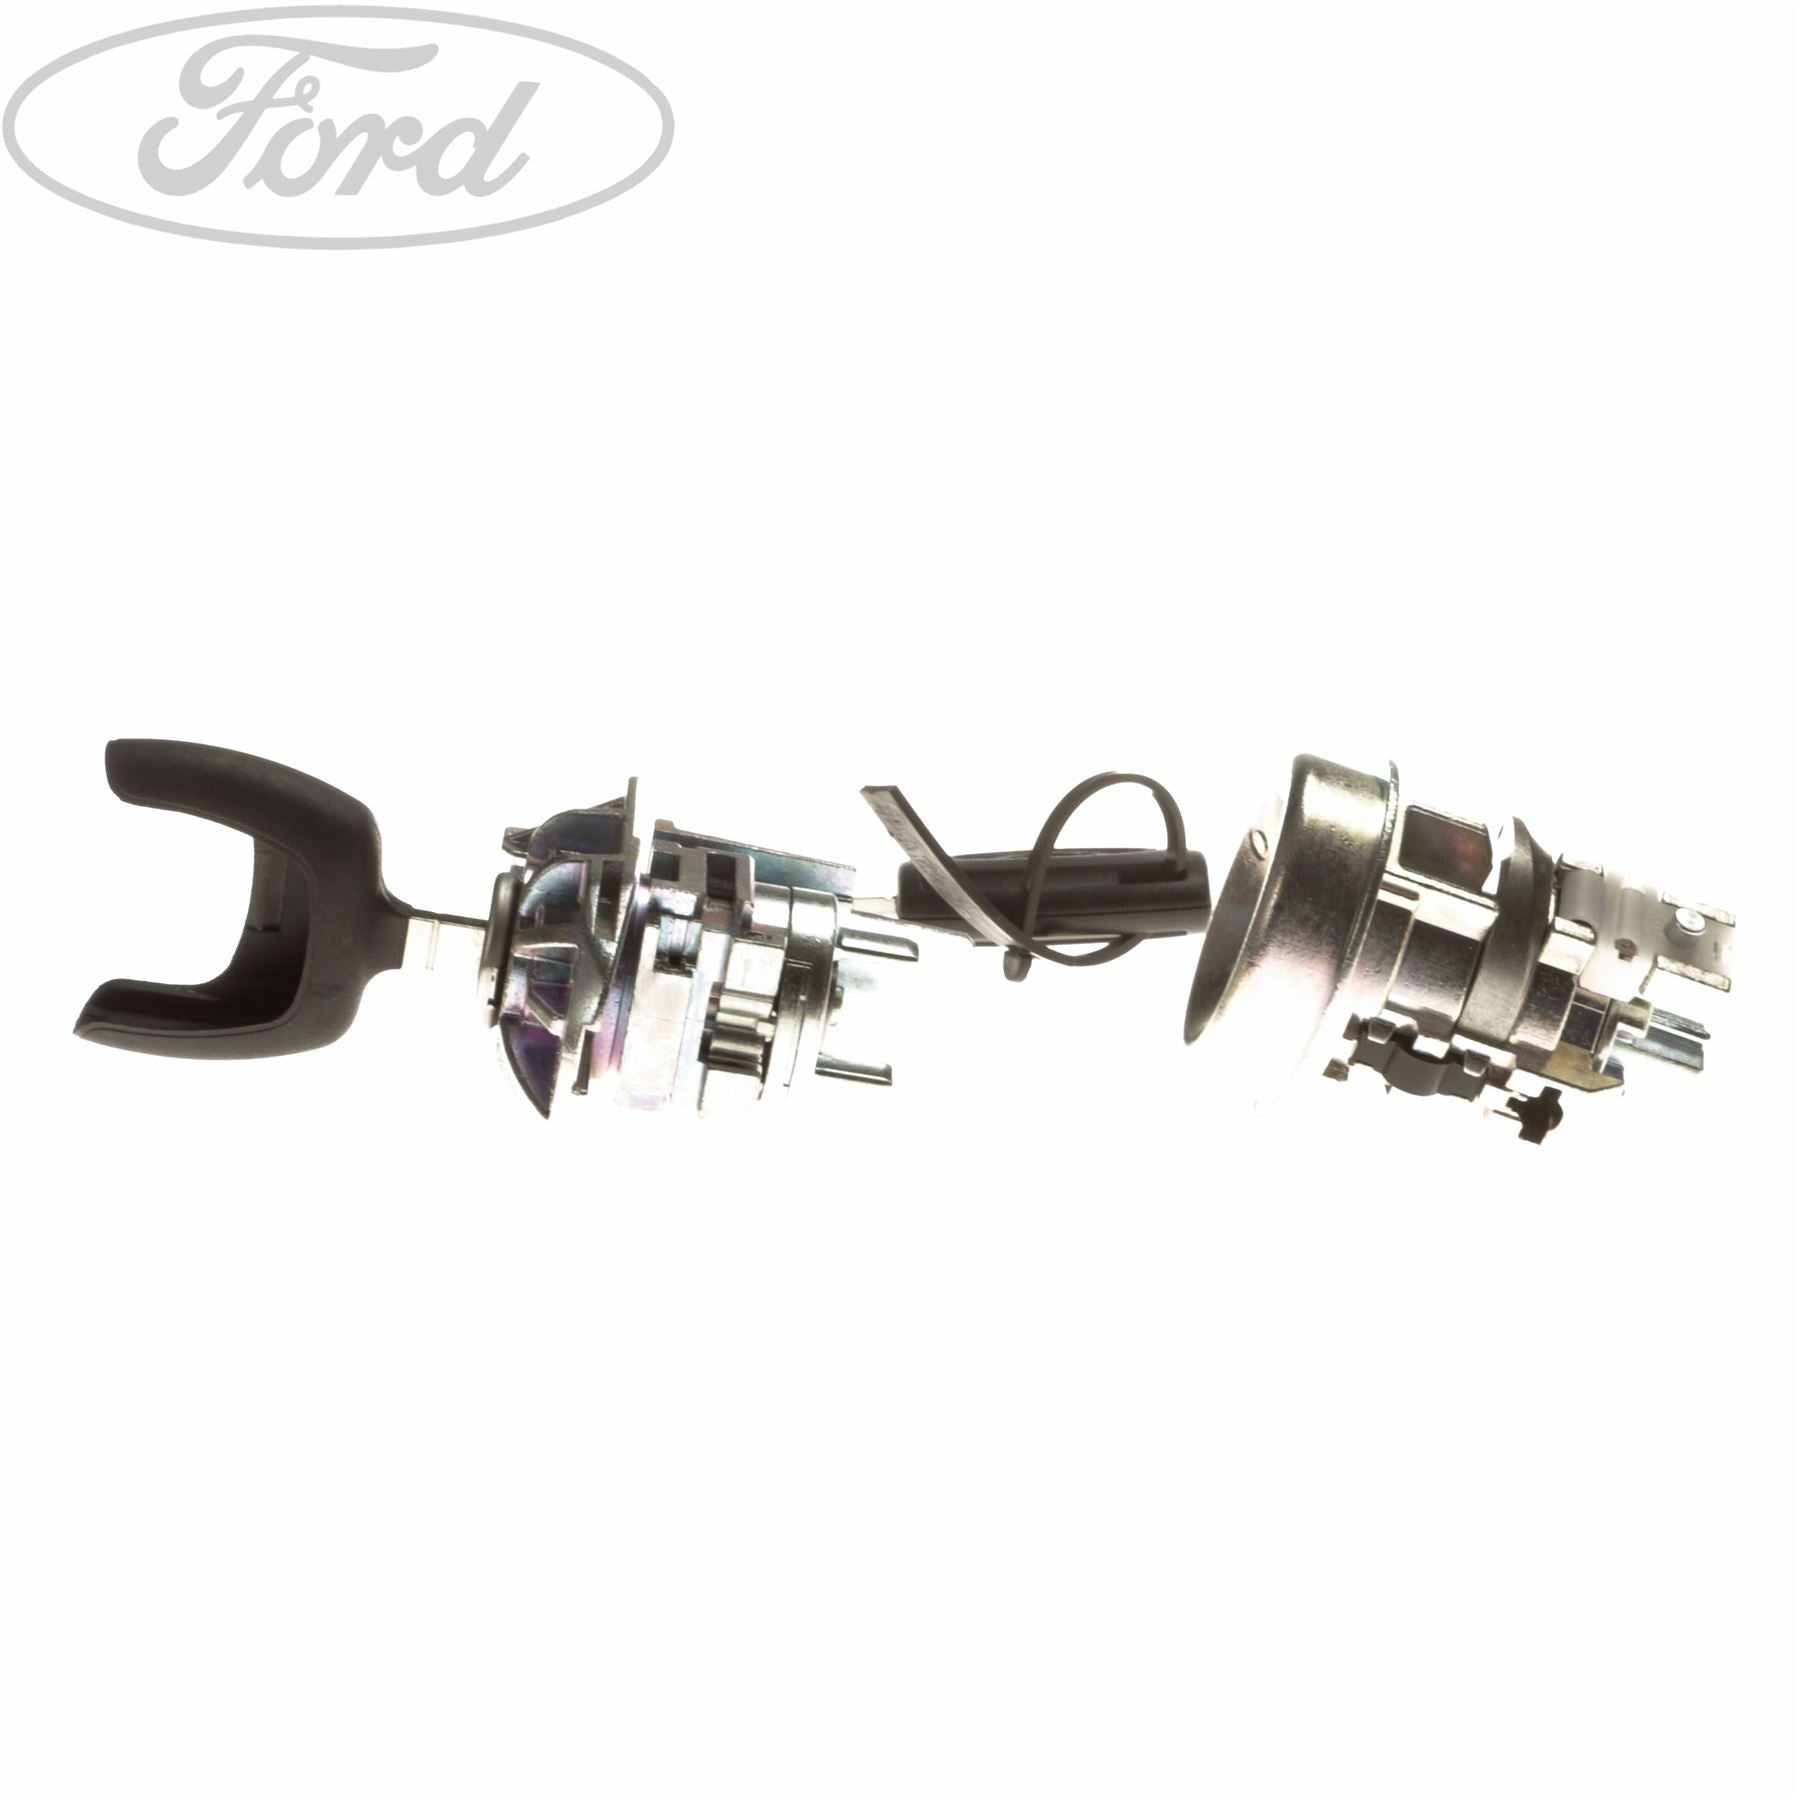 FORD FIESTA COMPLETE VEHICLE LOCKSET Ford Online Shop UK